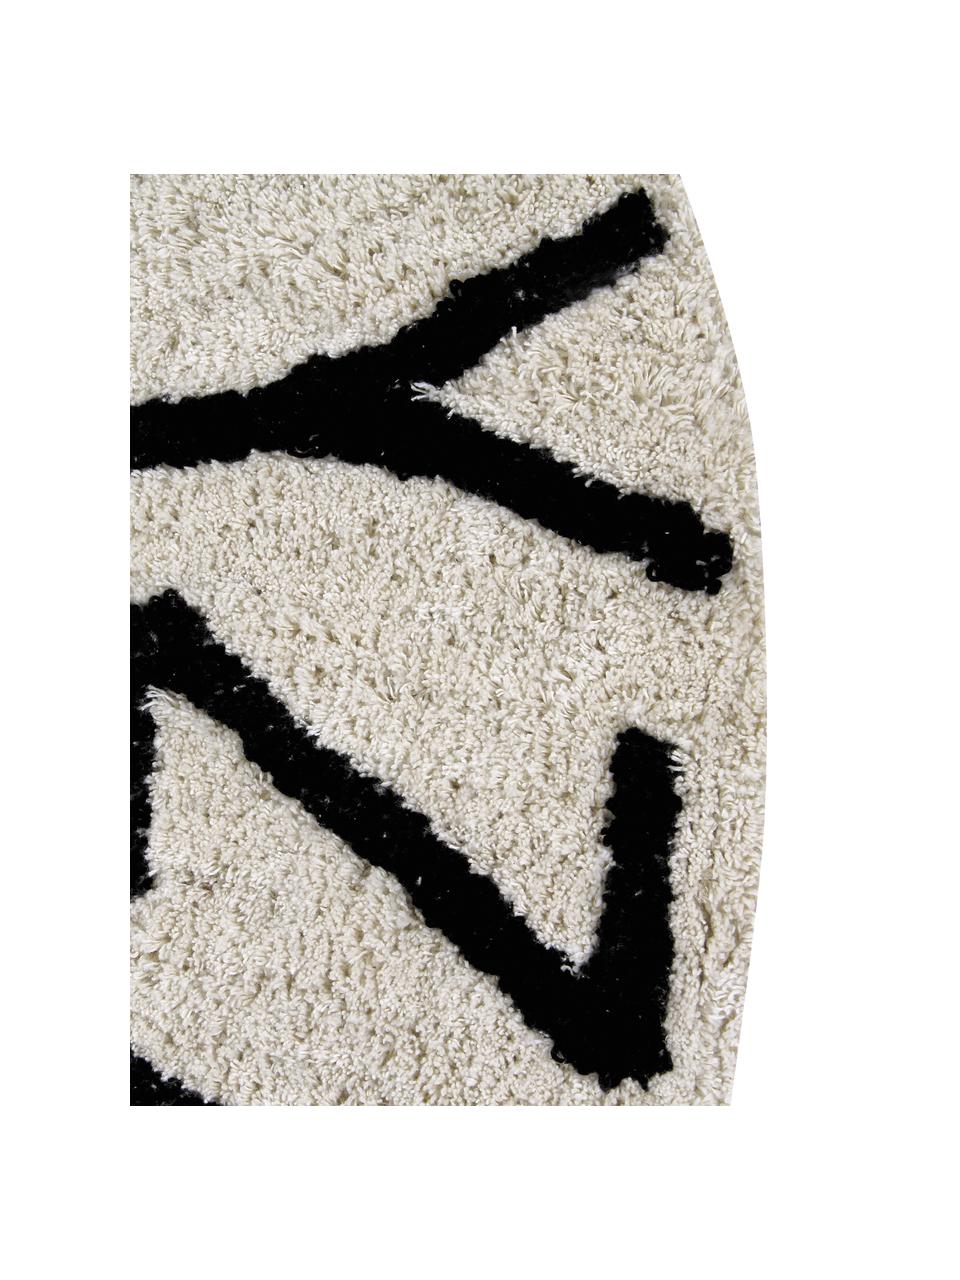 Runder Teppich ABC mit Buchstaben Design, Recycelte Baumwolle (80% Baumwolle, 20% andere Fasern), Beige, Schwarz, Ø 150 cm (Größe M)